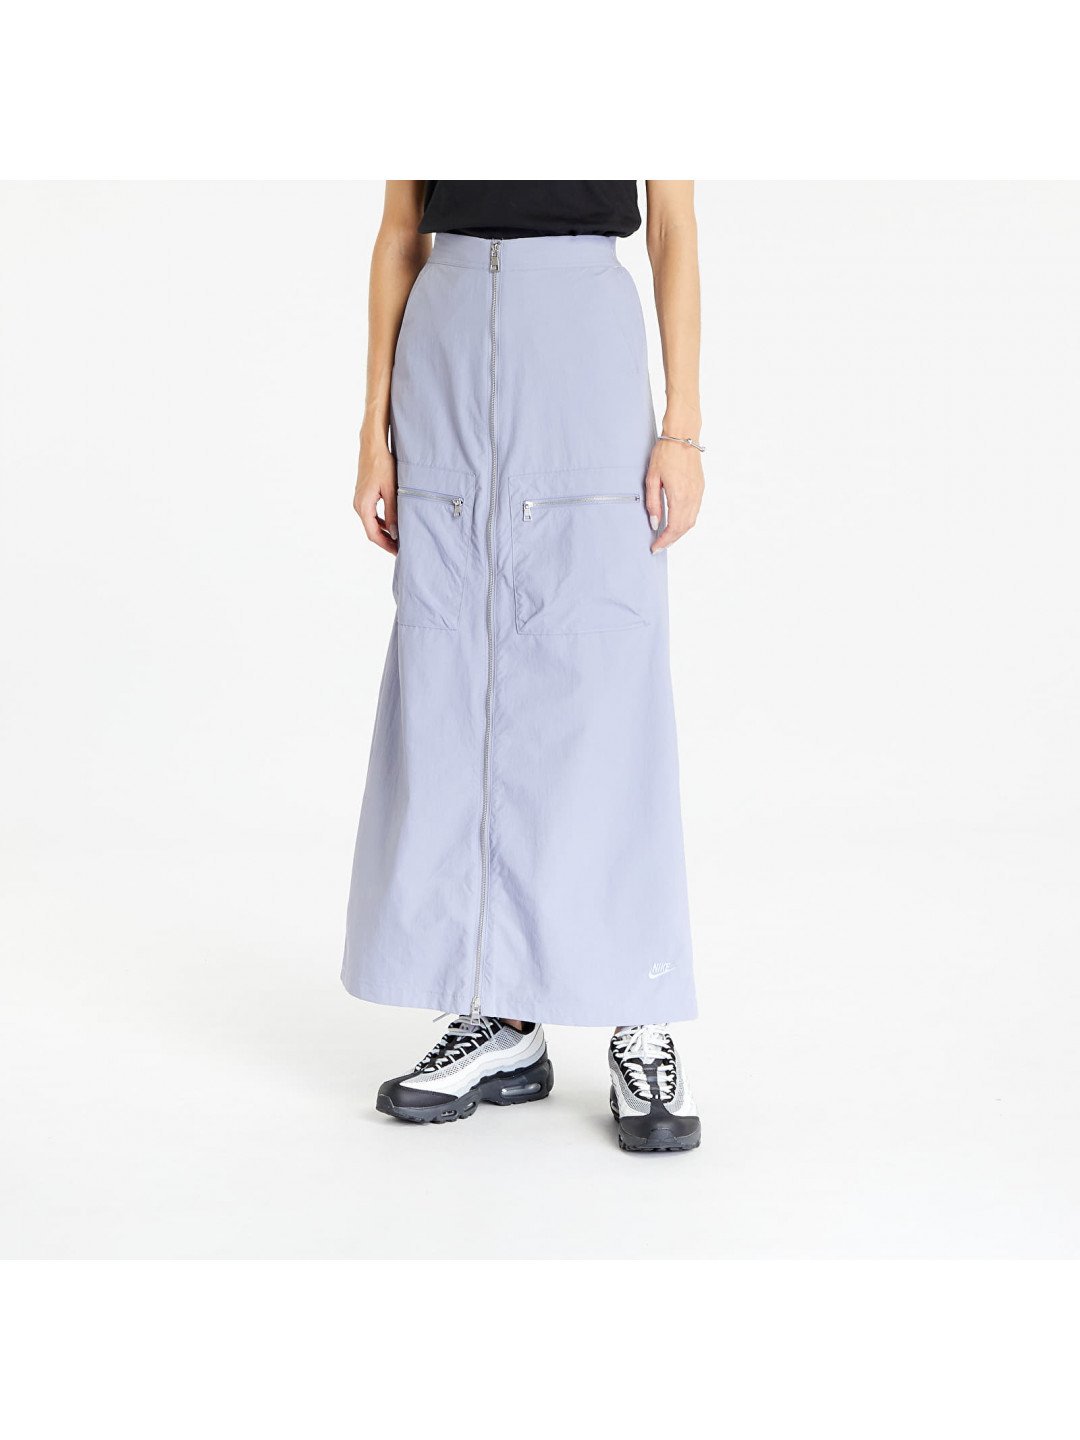 Nike Sportswear Tech Pack Woven Skirt Indigo Haze Cobalt Bliss